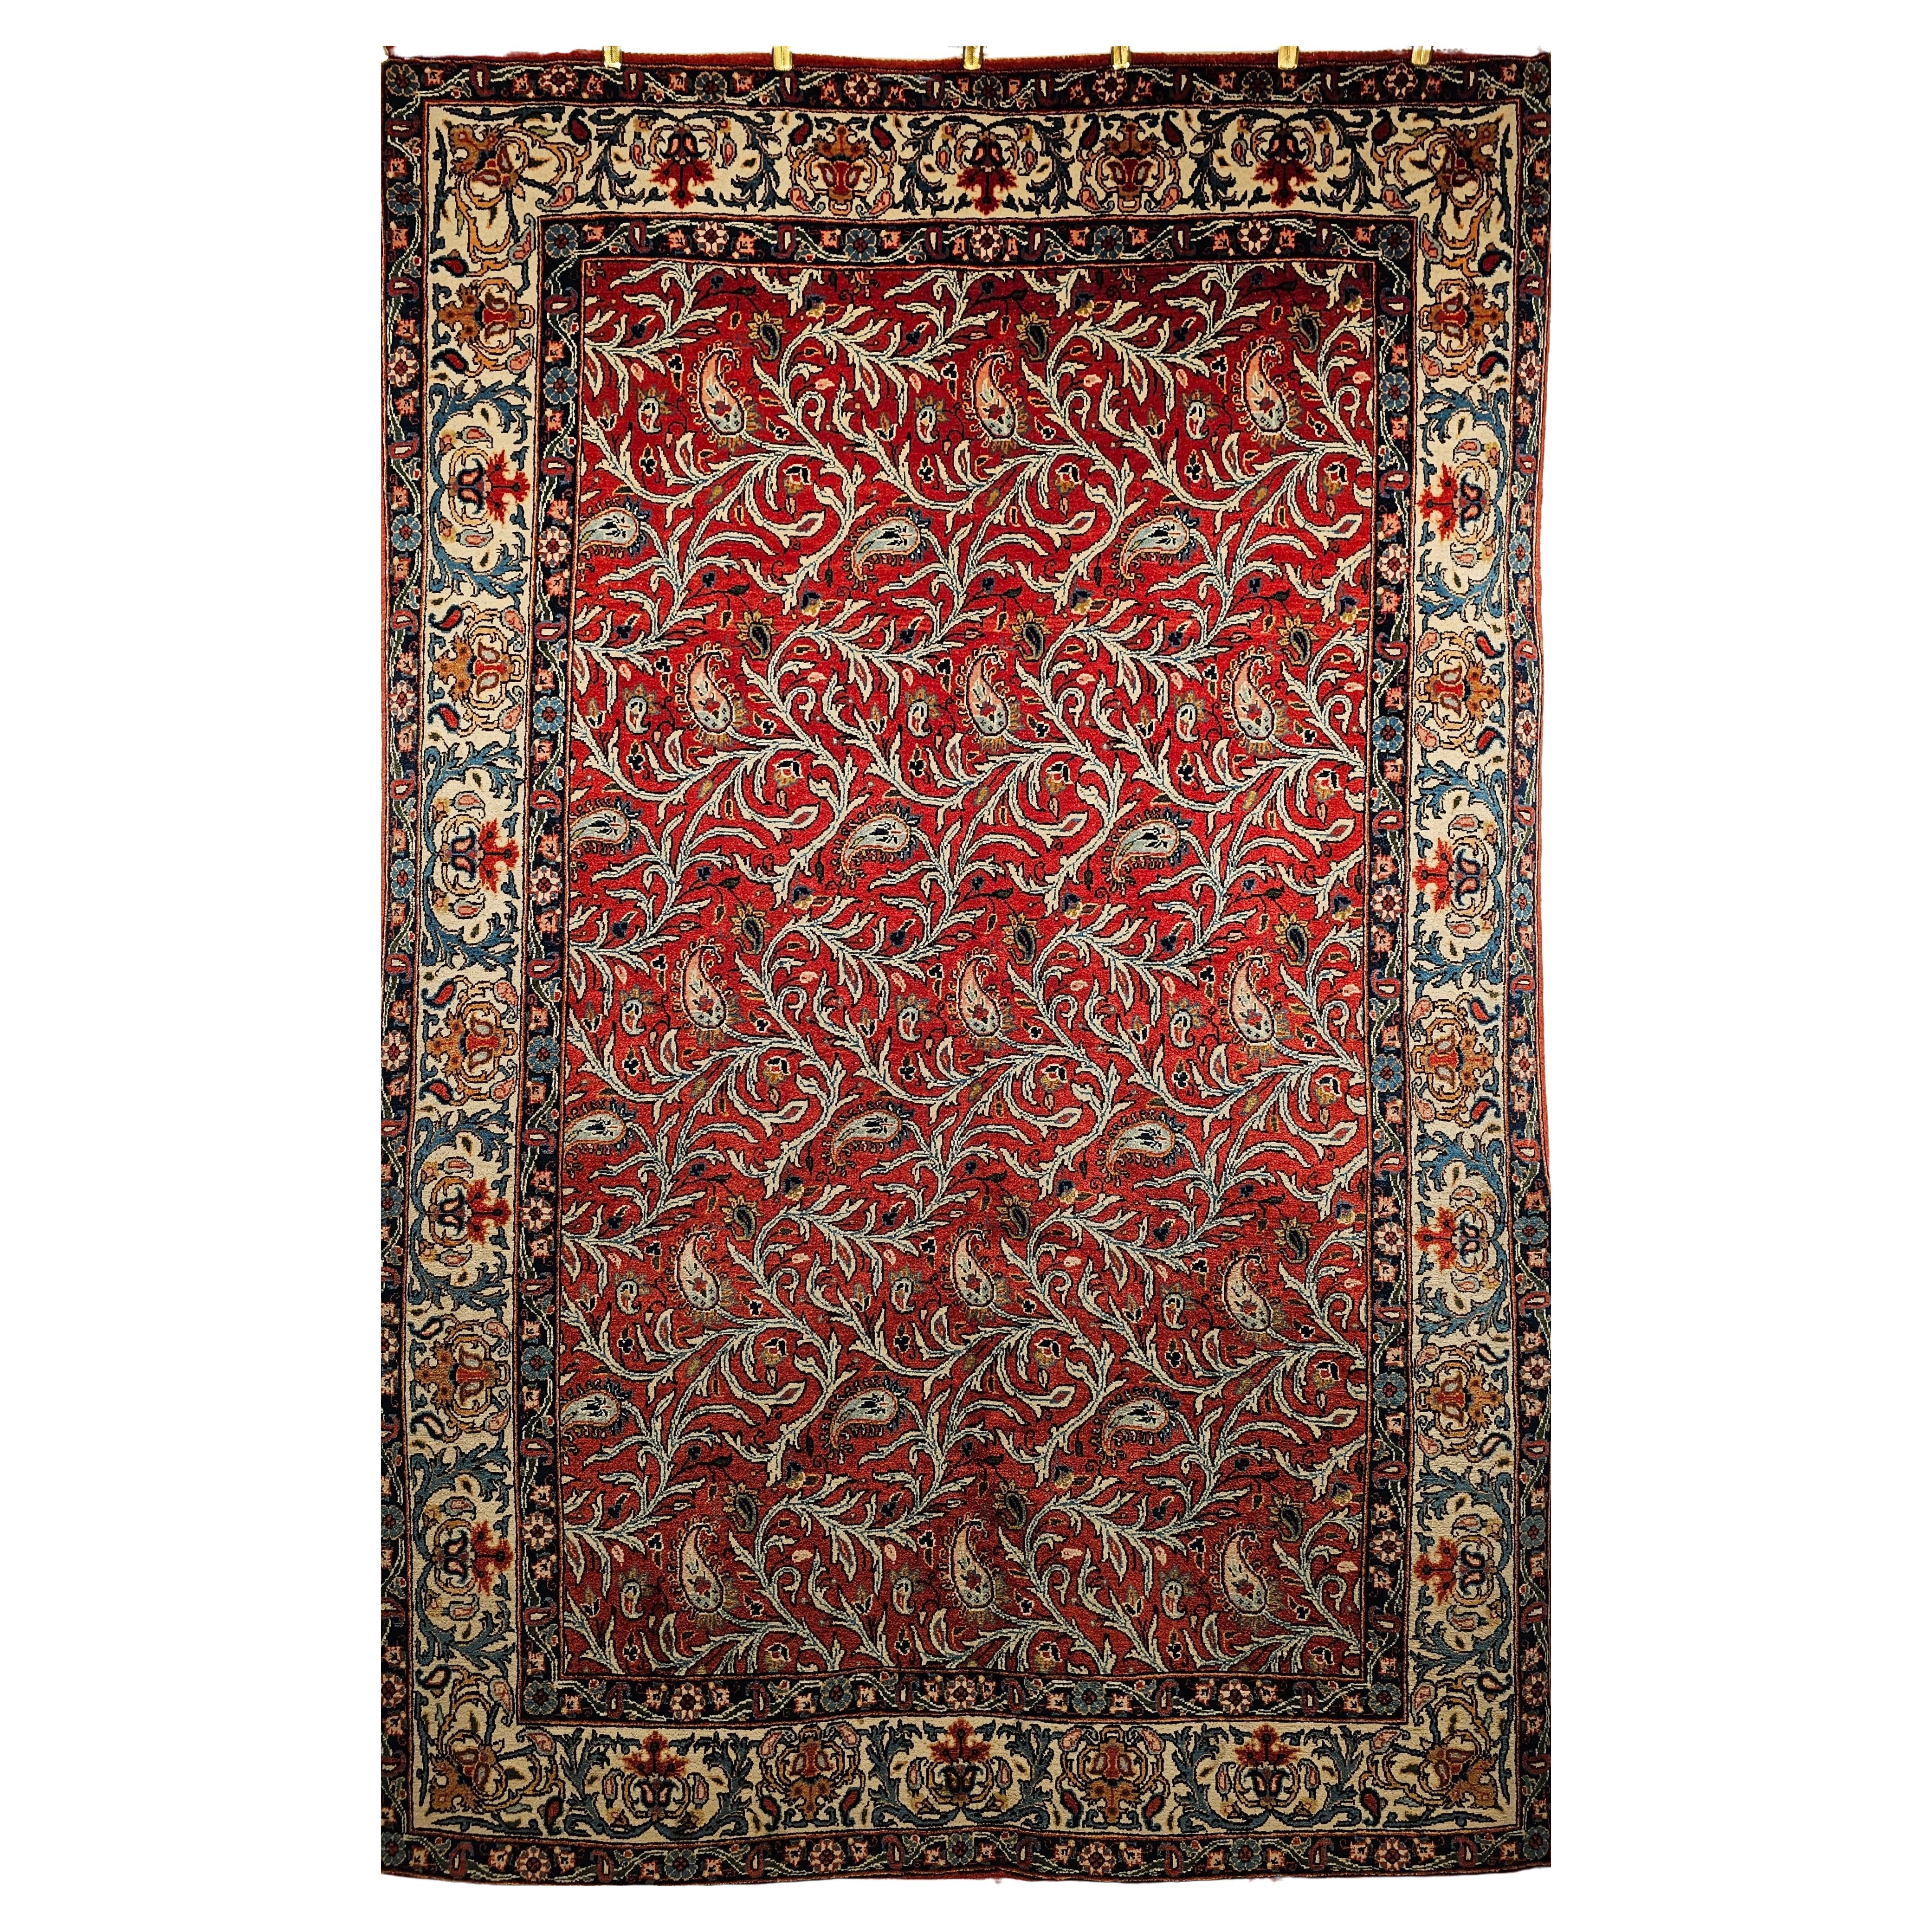 Persischer Qum-Teppich in Allover-Paisleys-Muster in Ziegelrot, Elfenbein, Blau